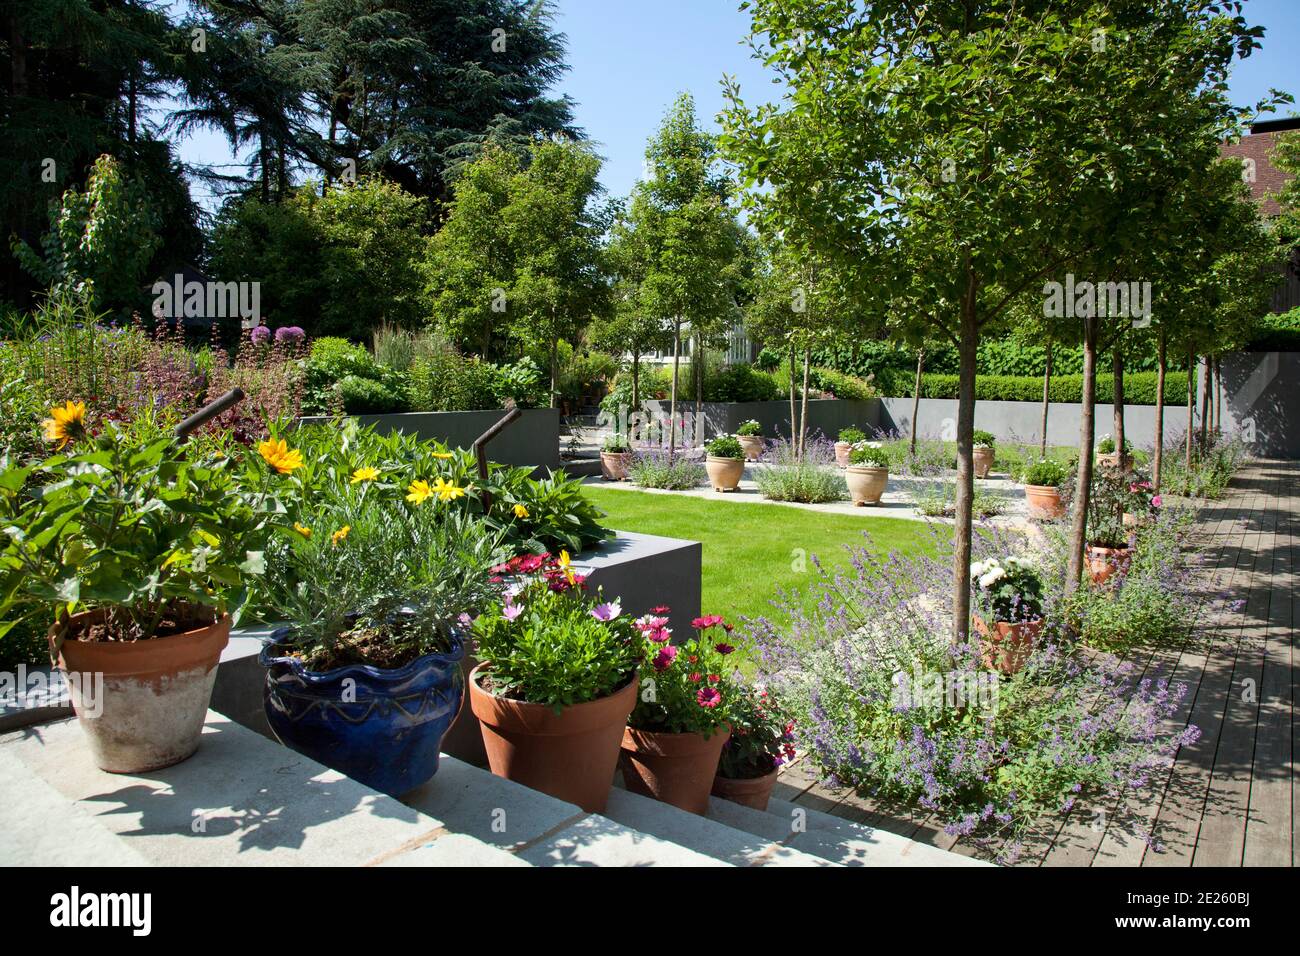 Jardin avec pots de fleurs sur les marches, nepeta, pelouse, terrasse en bois et petits arbres Banque D'Images